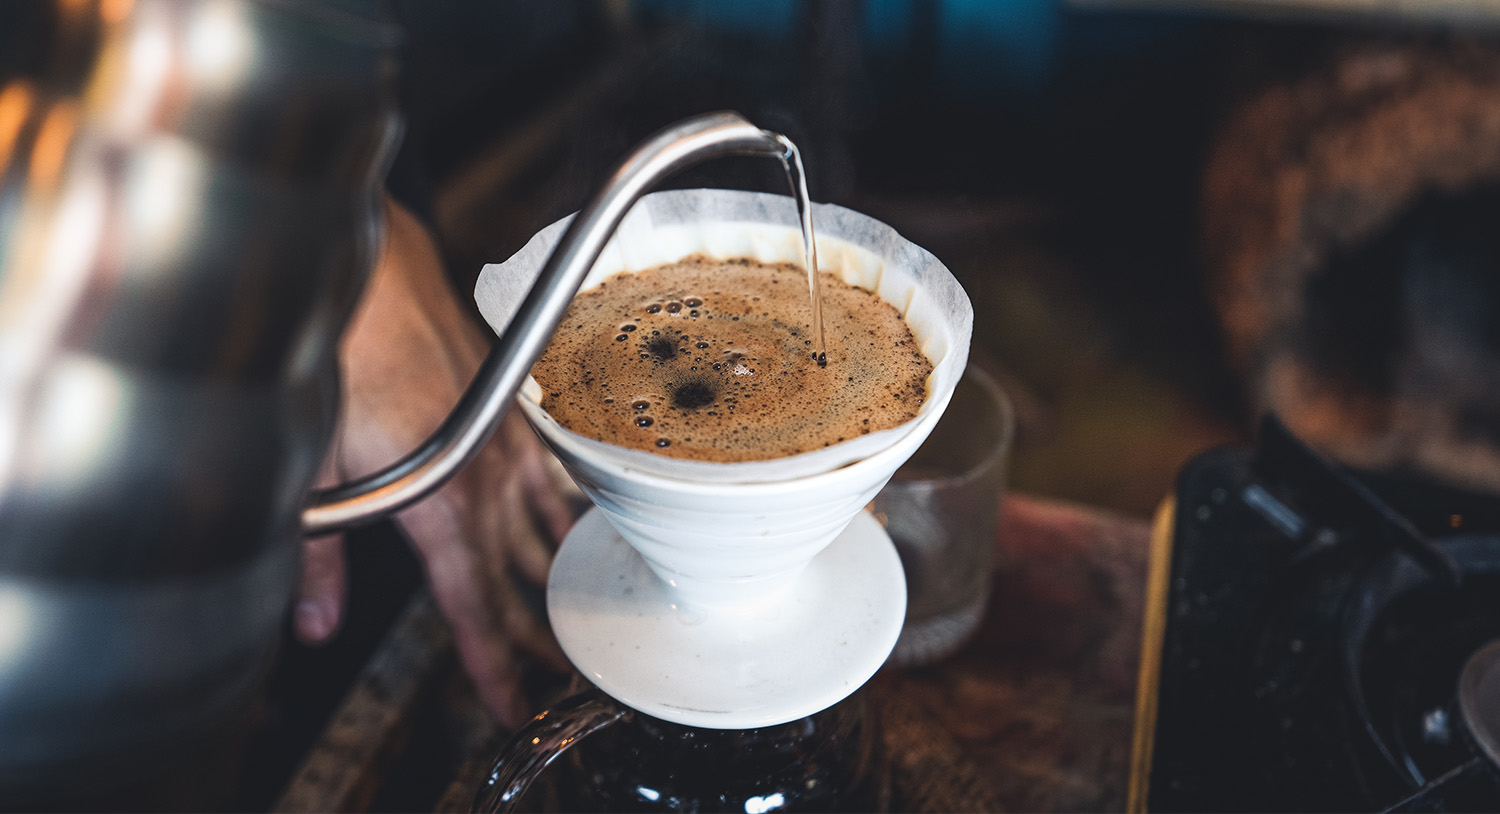 parzenie-kawy-zaparzanie-kawy-pour-over-coffee-kawa-filtrowana-kawa-z-filtrem-jednorazowym-jaki-ekspres-do-kawy-styl-włoski